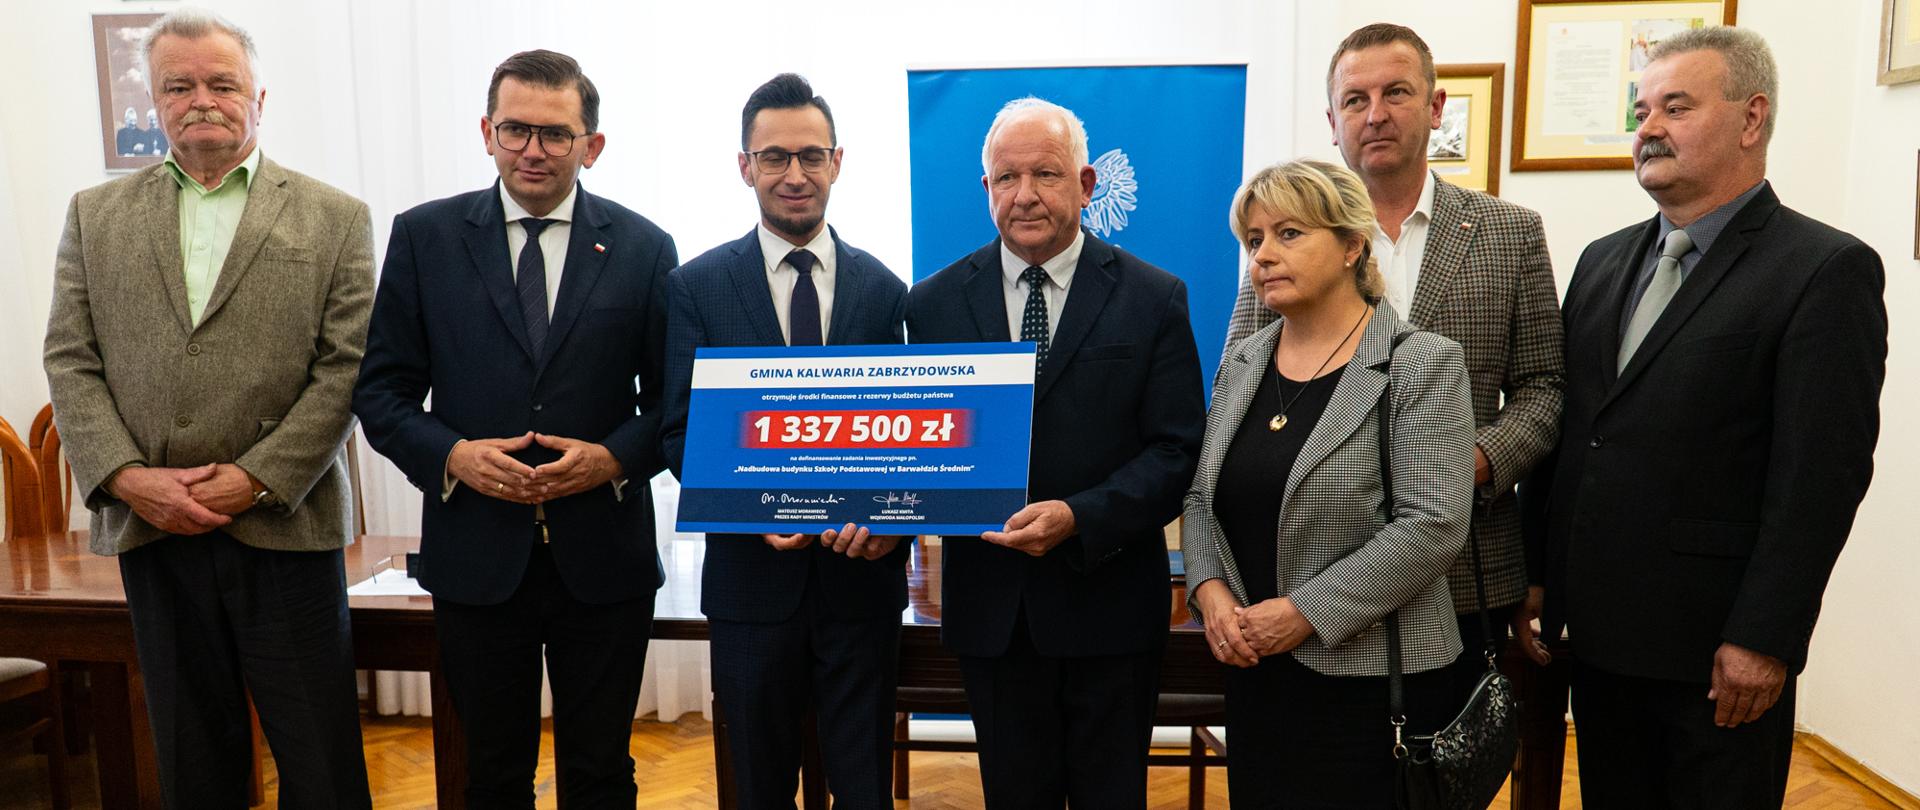 W gabinecie burmistrza pozują do fotografii grupowej uczestnicy spotkania. Stojący w środku poseł Kaczyński i burmistrz Ormanty trzymają symboliczny czek z kwotą dofinansowania.